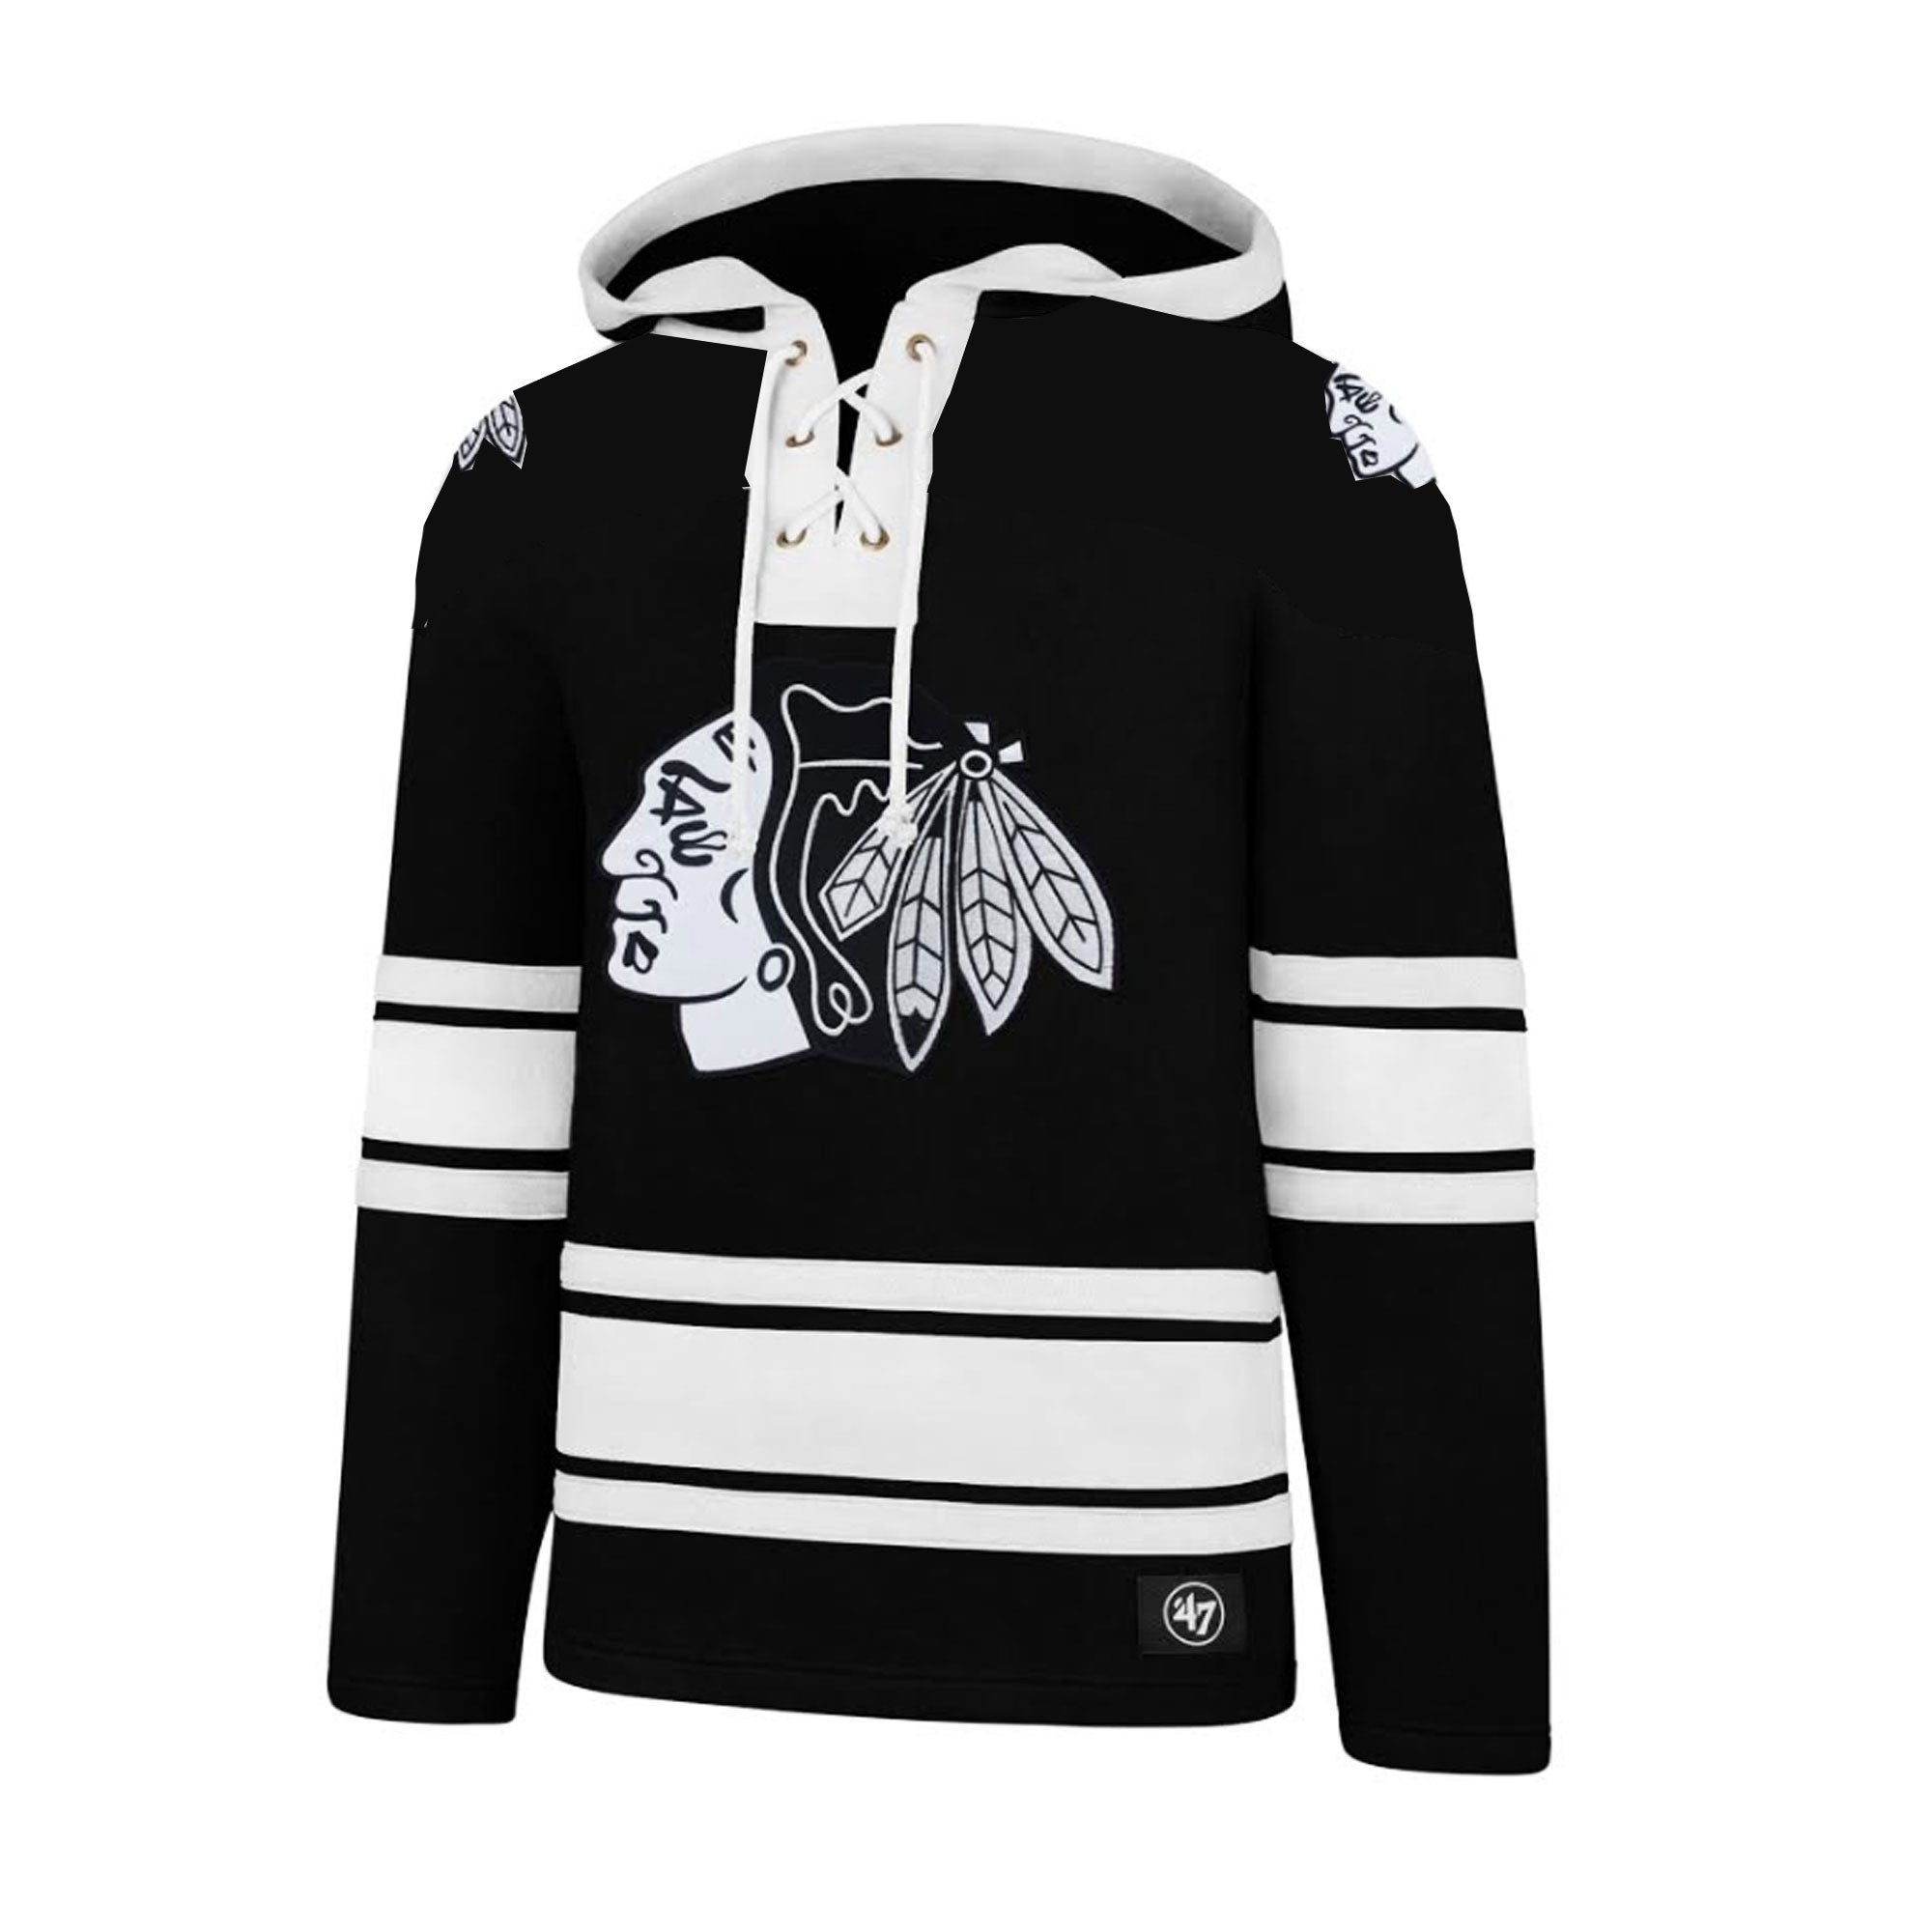 white chicago blackhawks hoodie